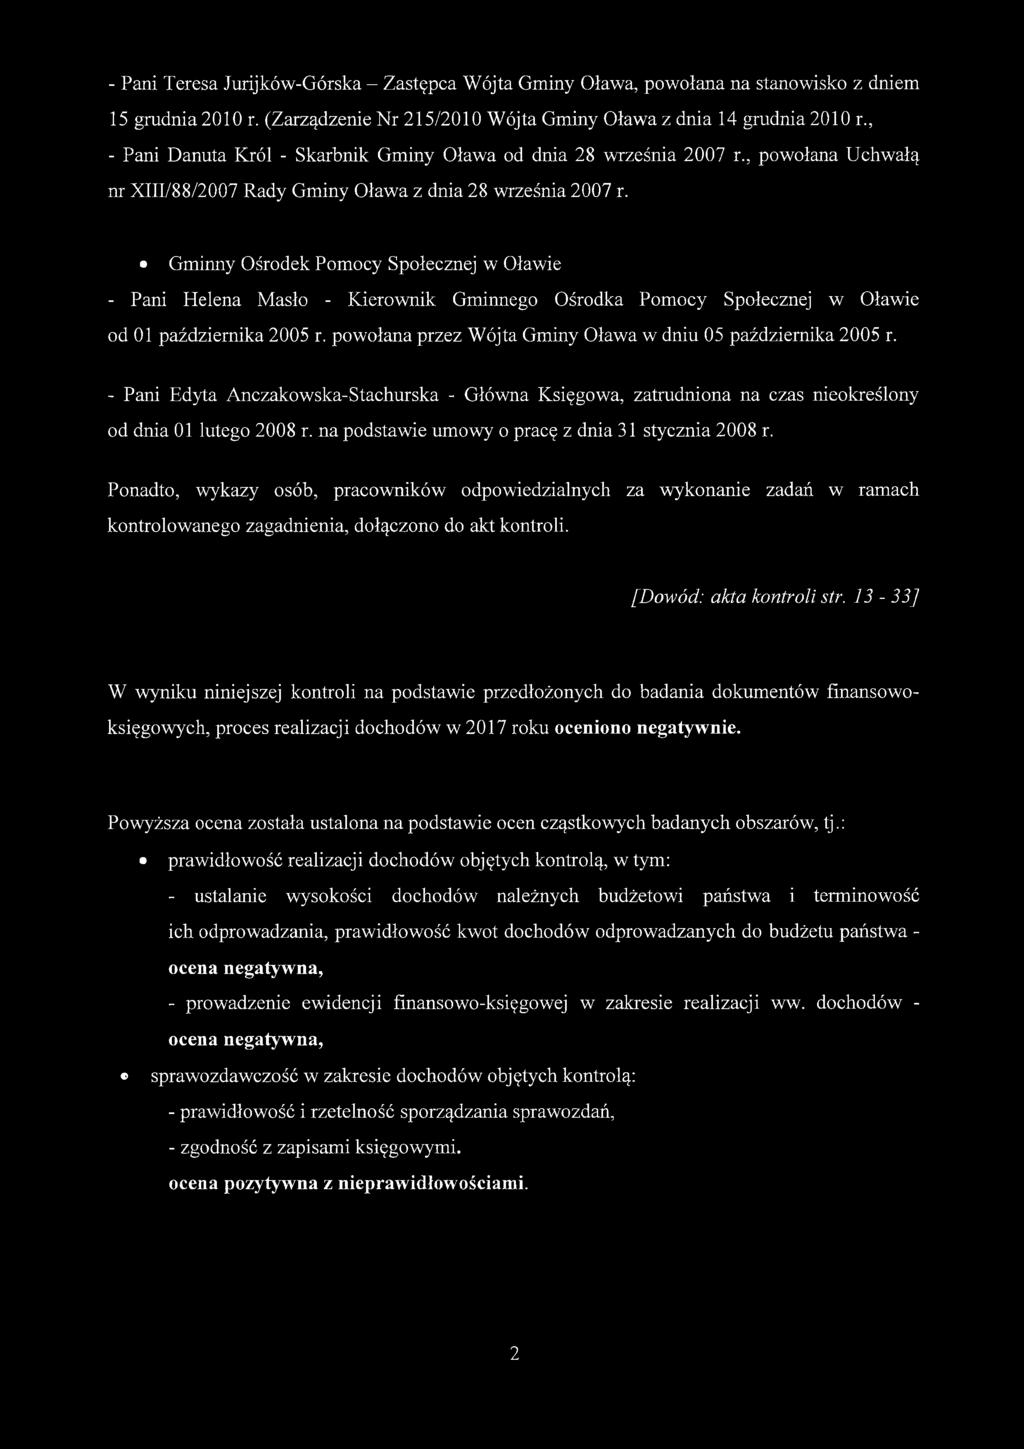 Gminny Ośrodek Pomocy Społecznej w Oławie - Pani Helena Masło - Kierownik Gminnego Ośrodka Pomocy Społecznej w Oławie od 01 października 2005 r.